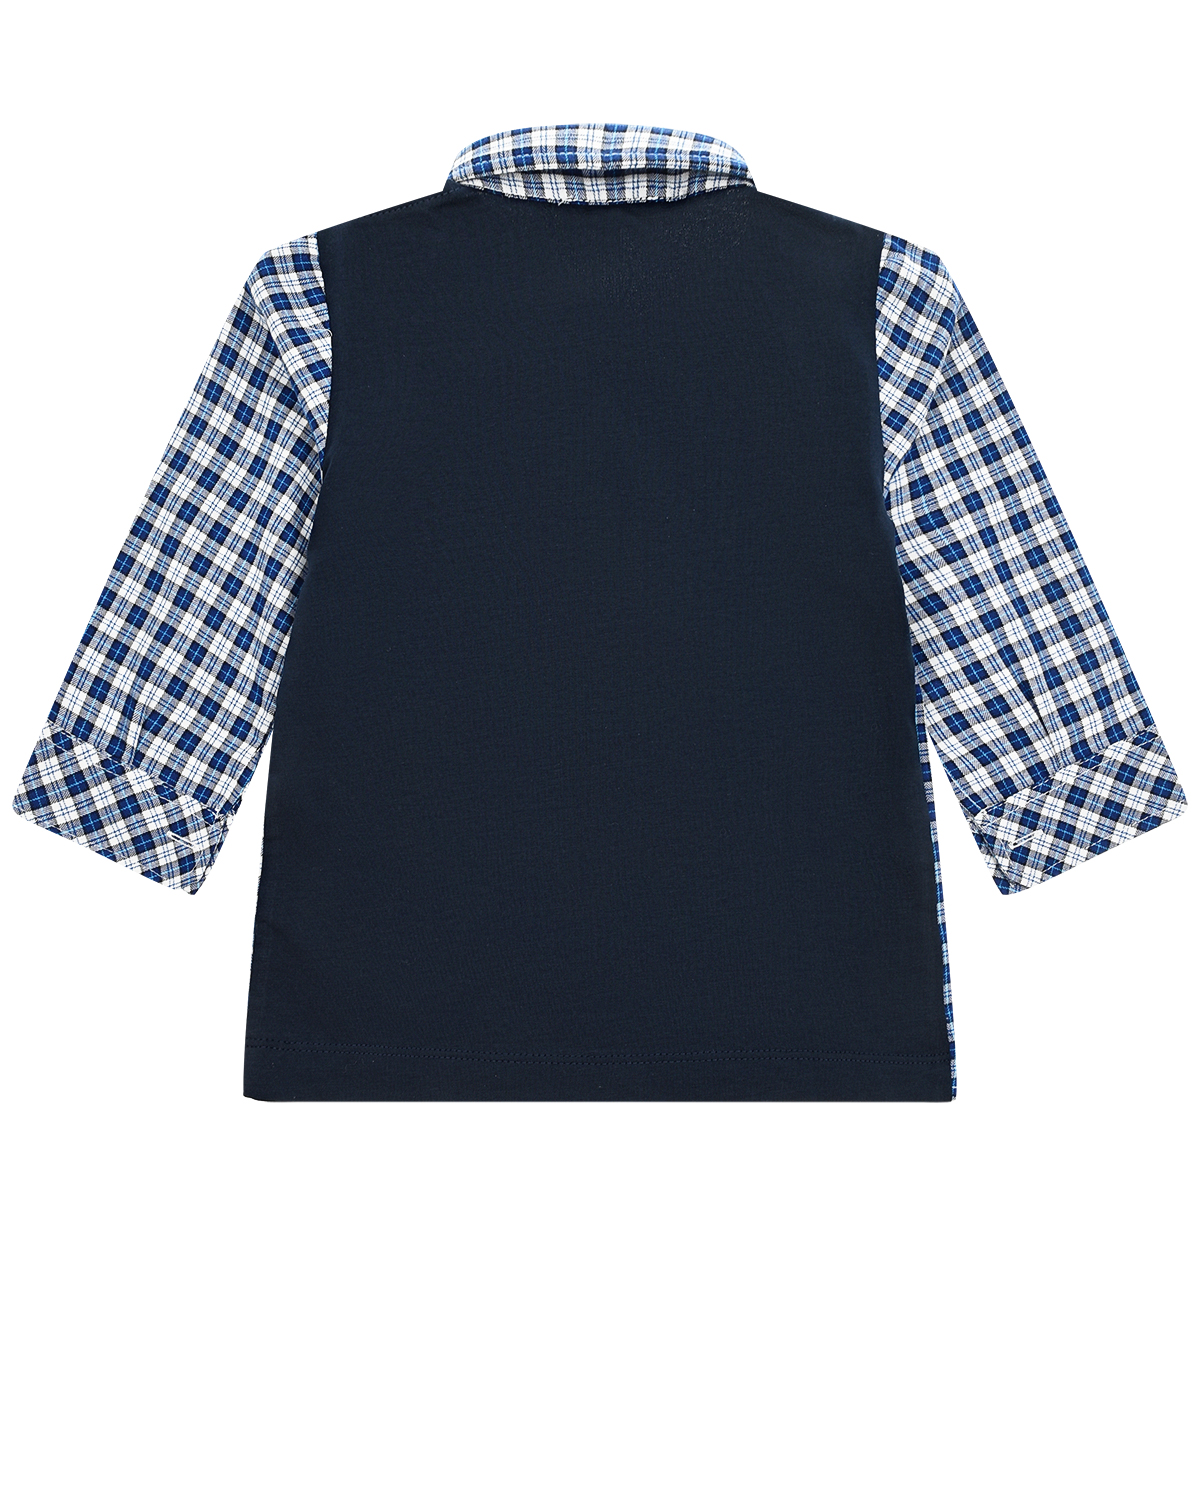 Рубашка в клетку Aletta детская, размер 74, цвет синий - фото 2